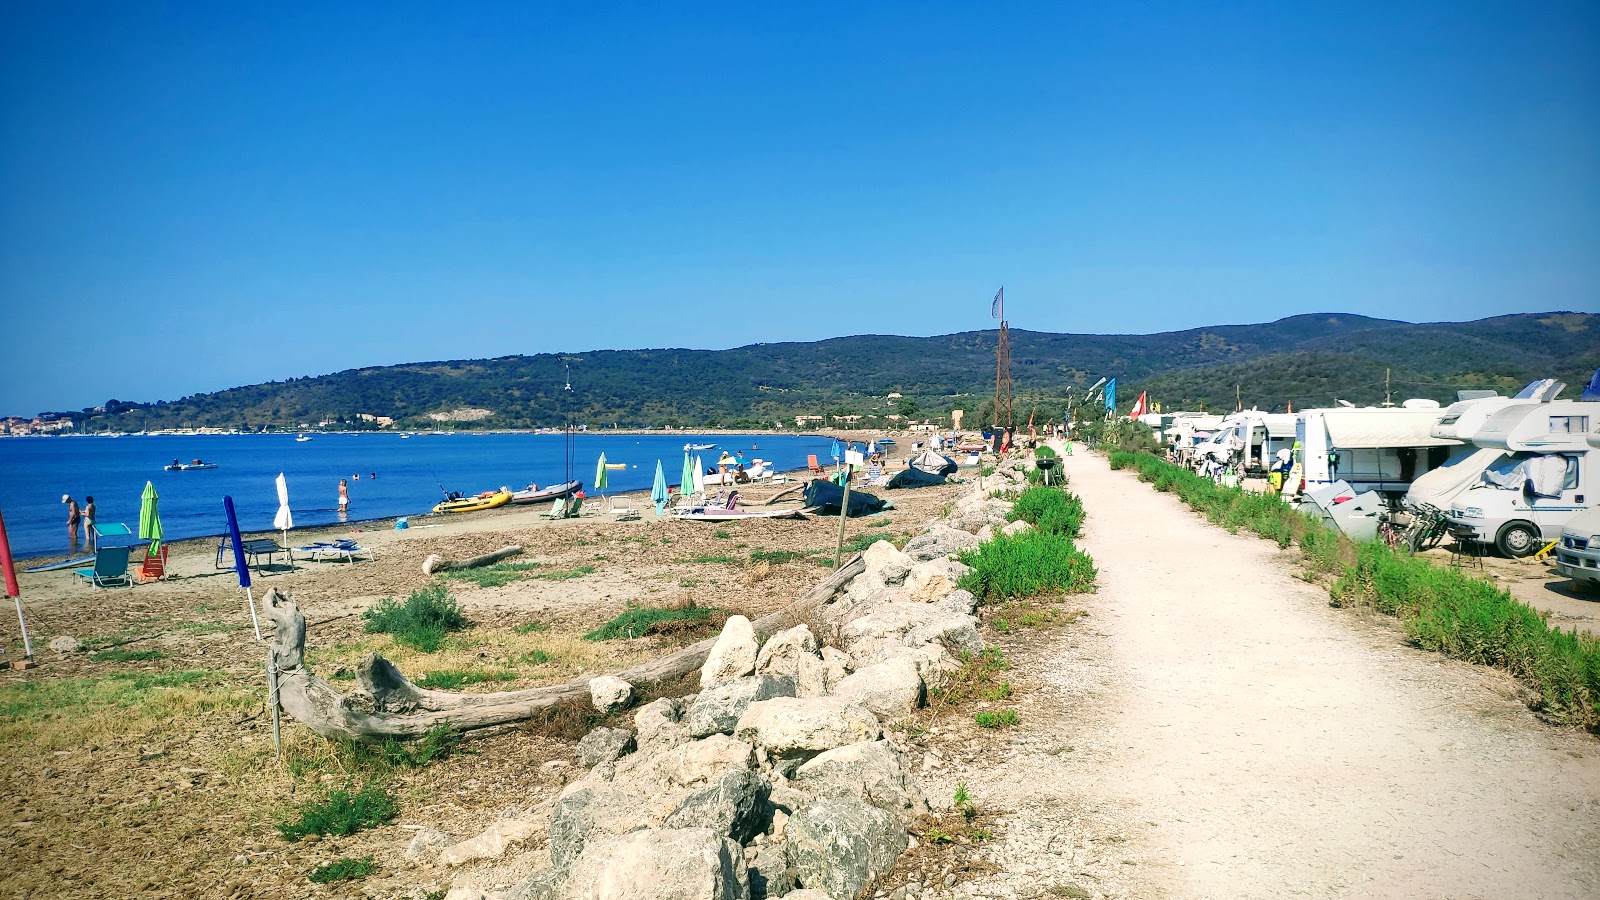 Spiaggia della Fertilia'in fotoğrafı geniş plaj ile birlikte